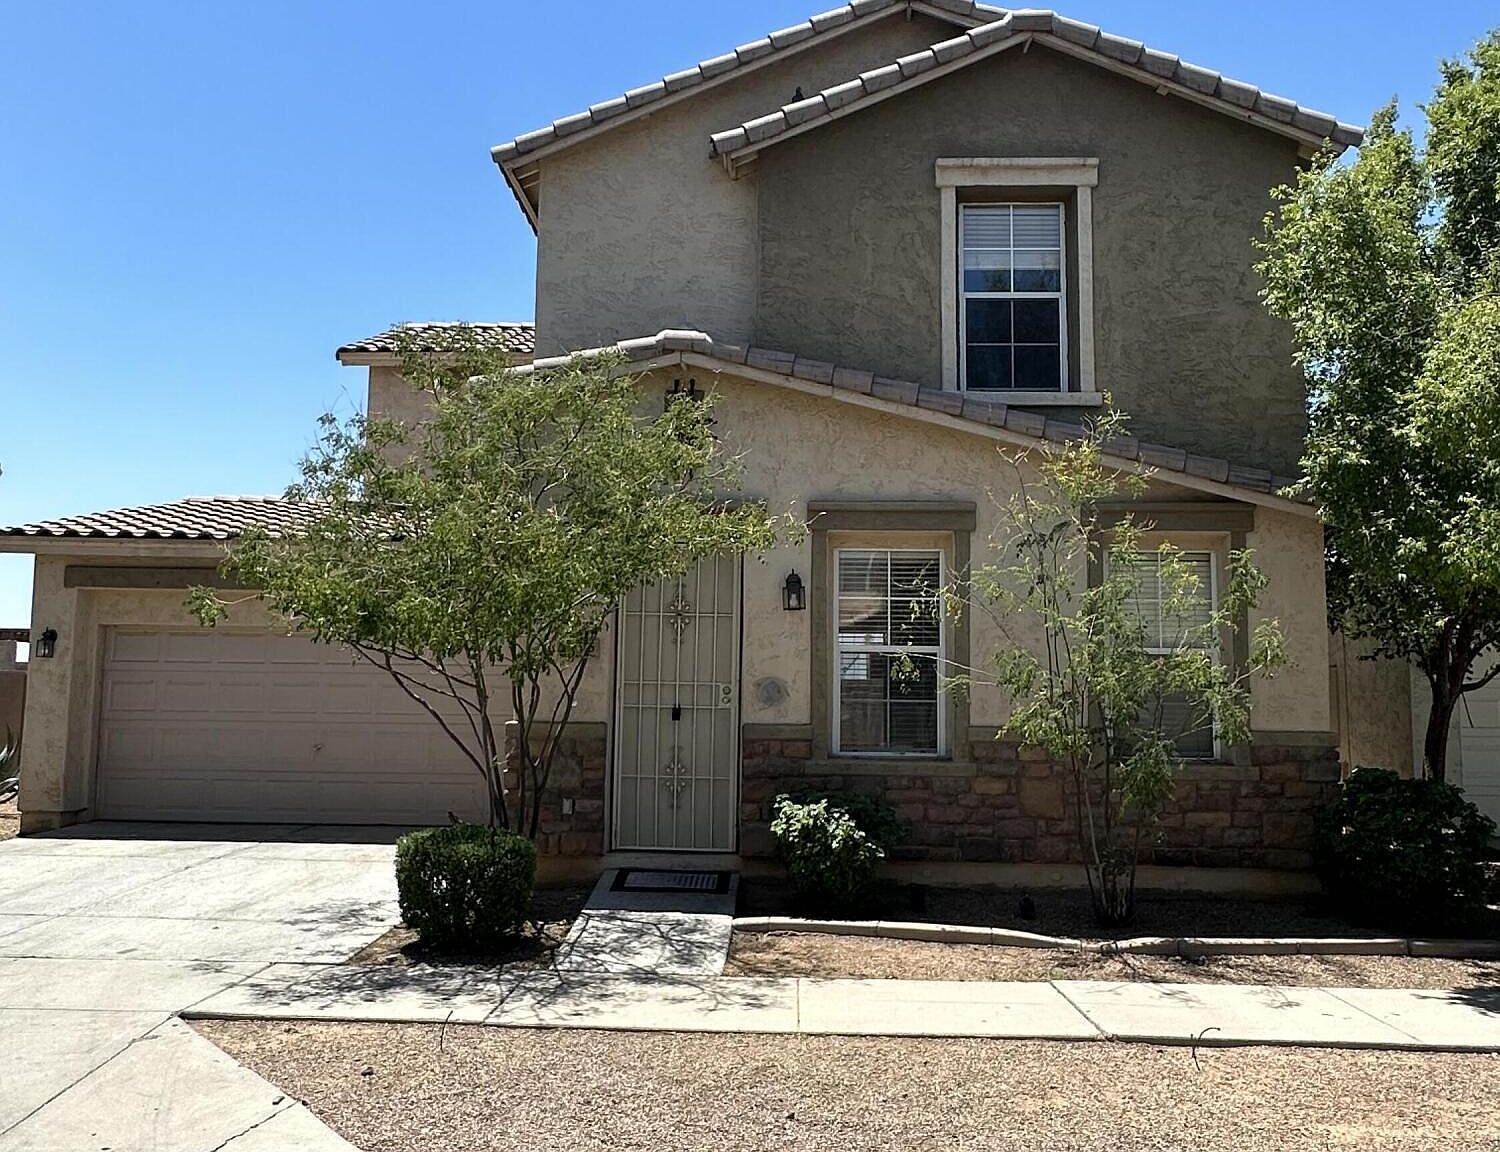 Chantelle S Villas, Phoenix, AZ Real Estate & Homes with 1+ Baths For Sale  - Movoto